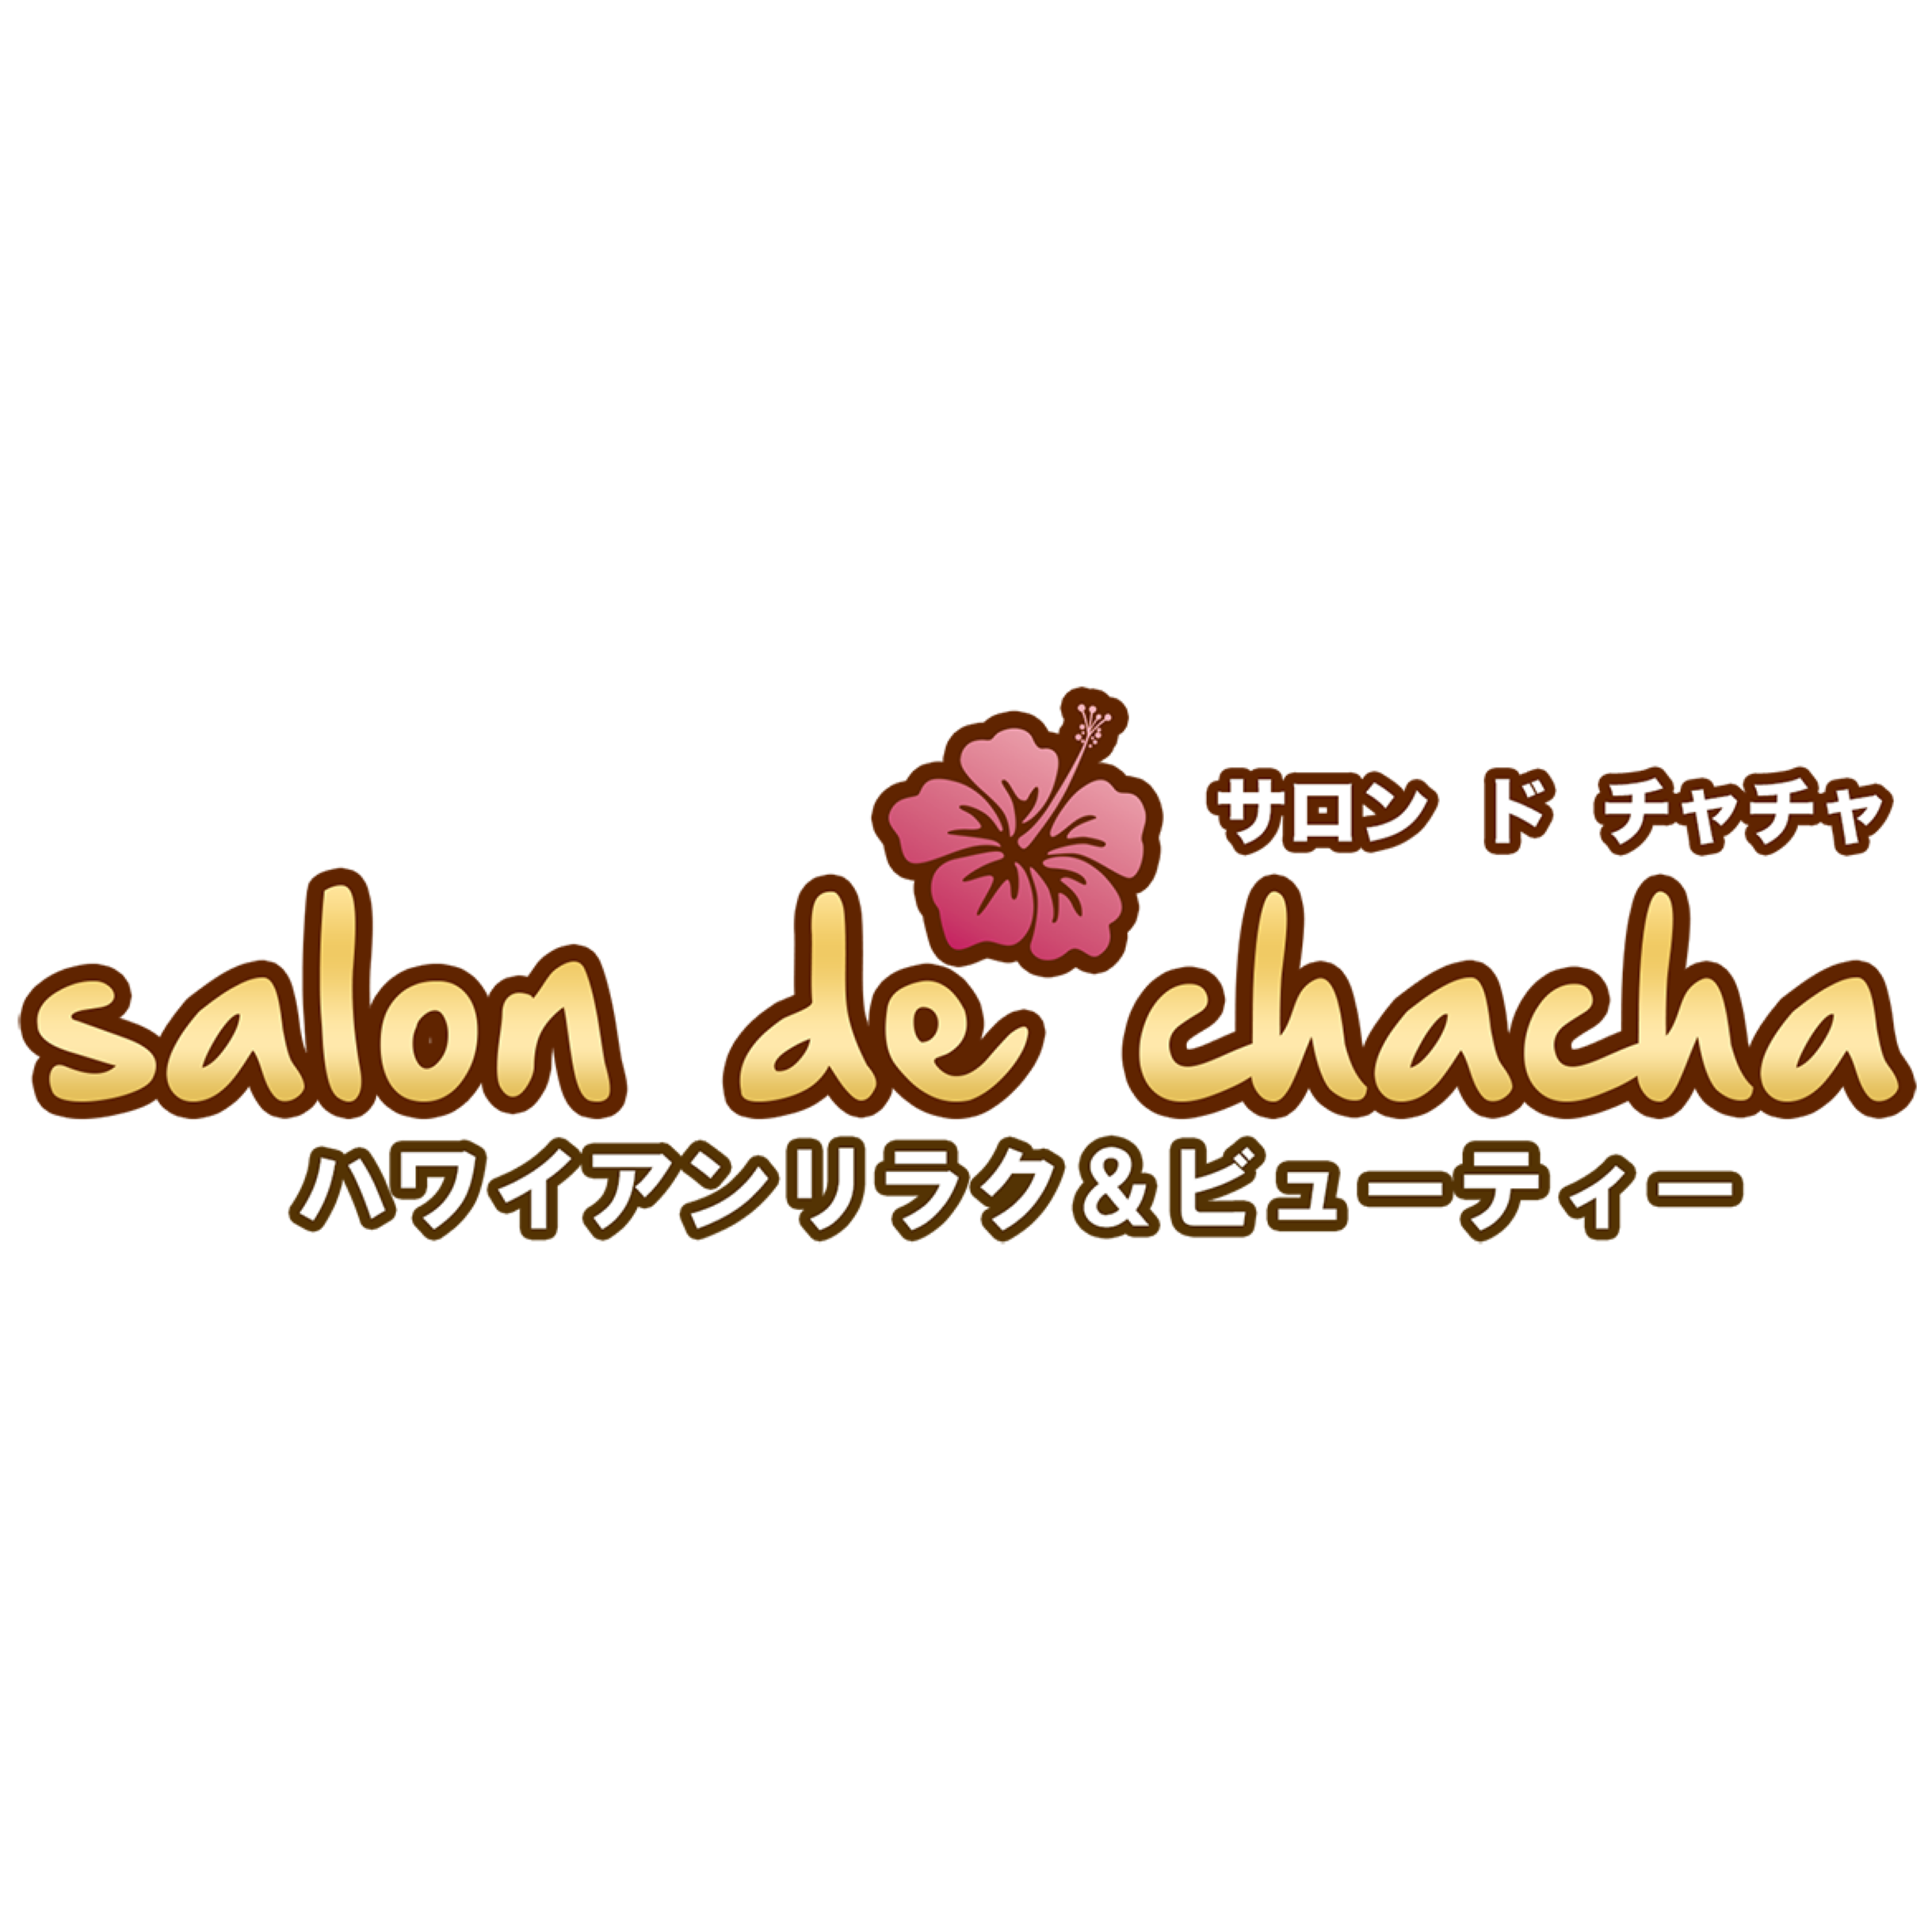 Salon de chacha 新横浜店〜ハワイアンリラク＆ビューティー〜 Logo